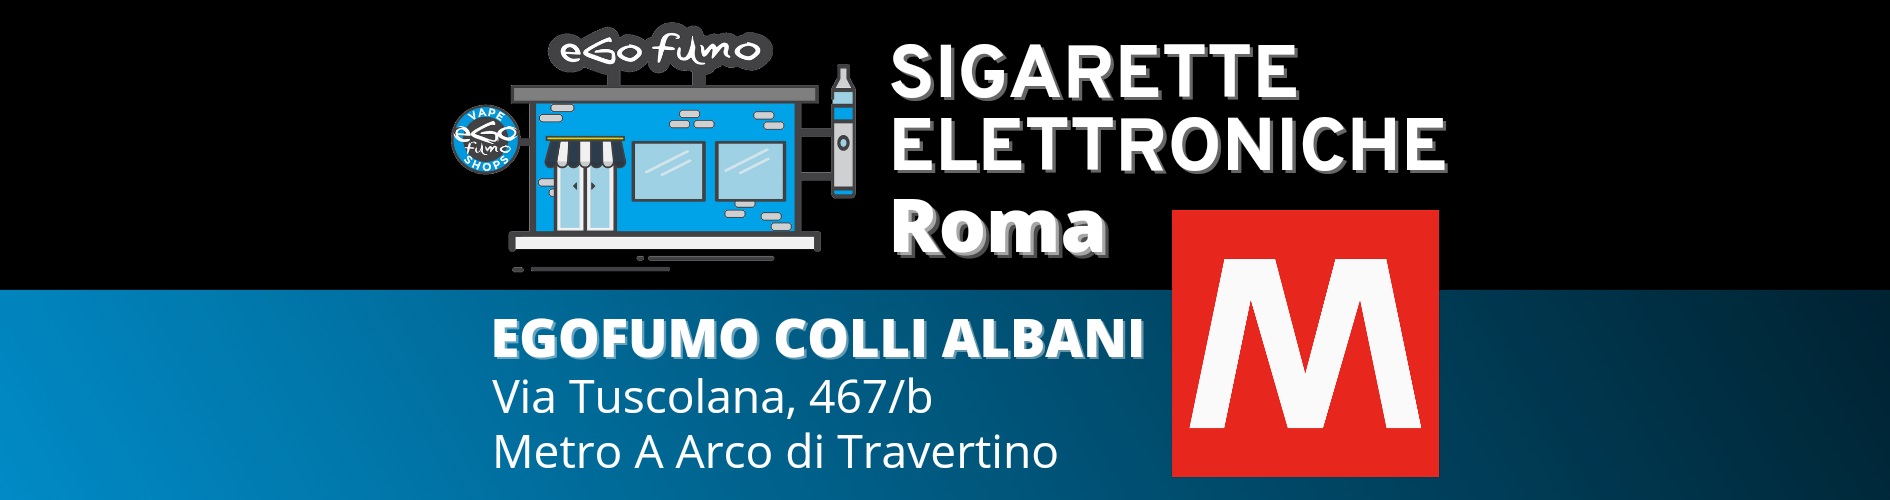 Negozio sigarette elettroniche Colli Albani Roma